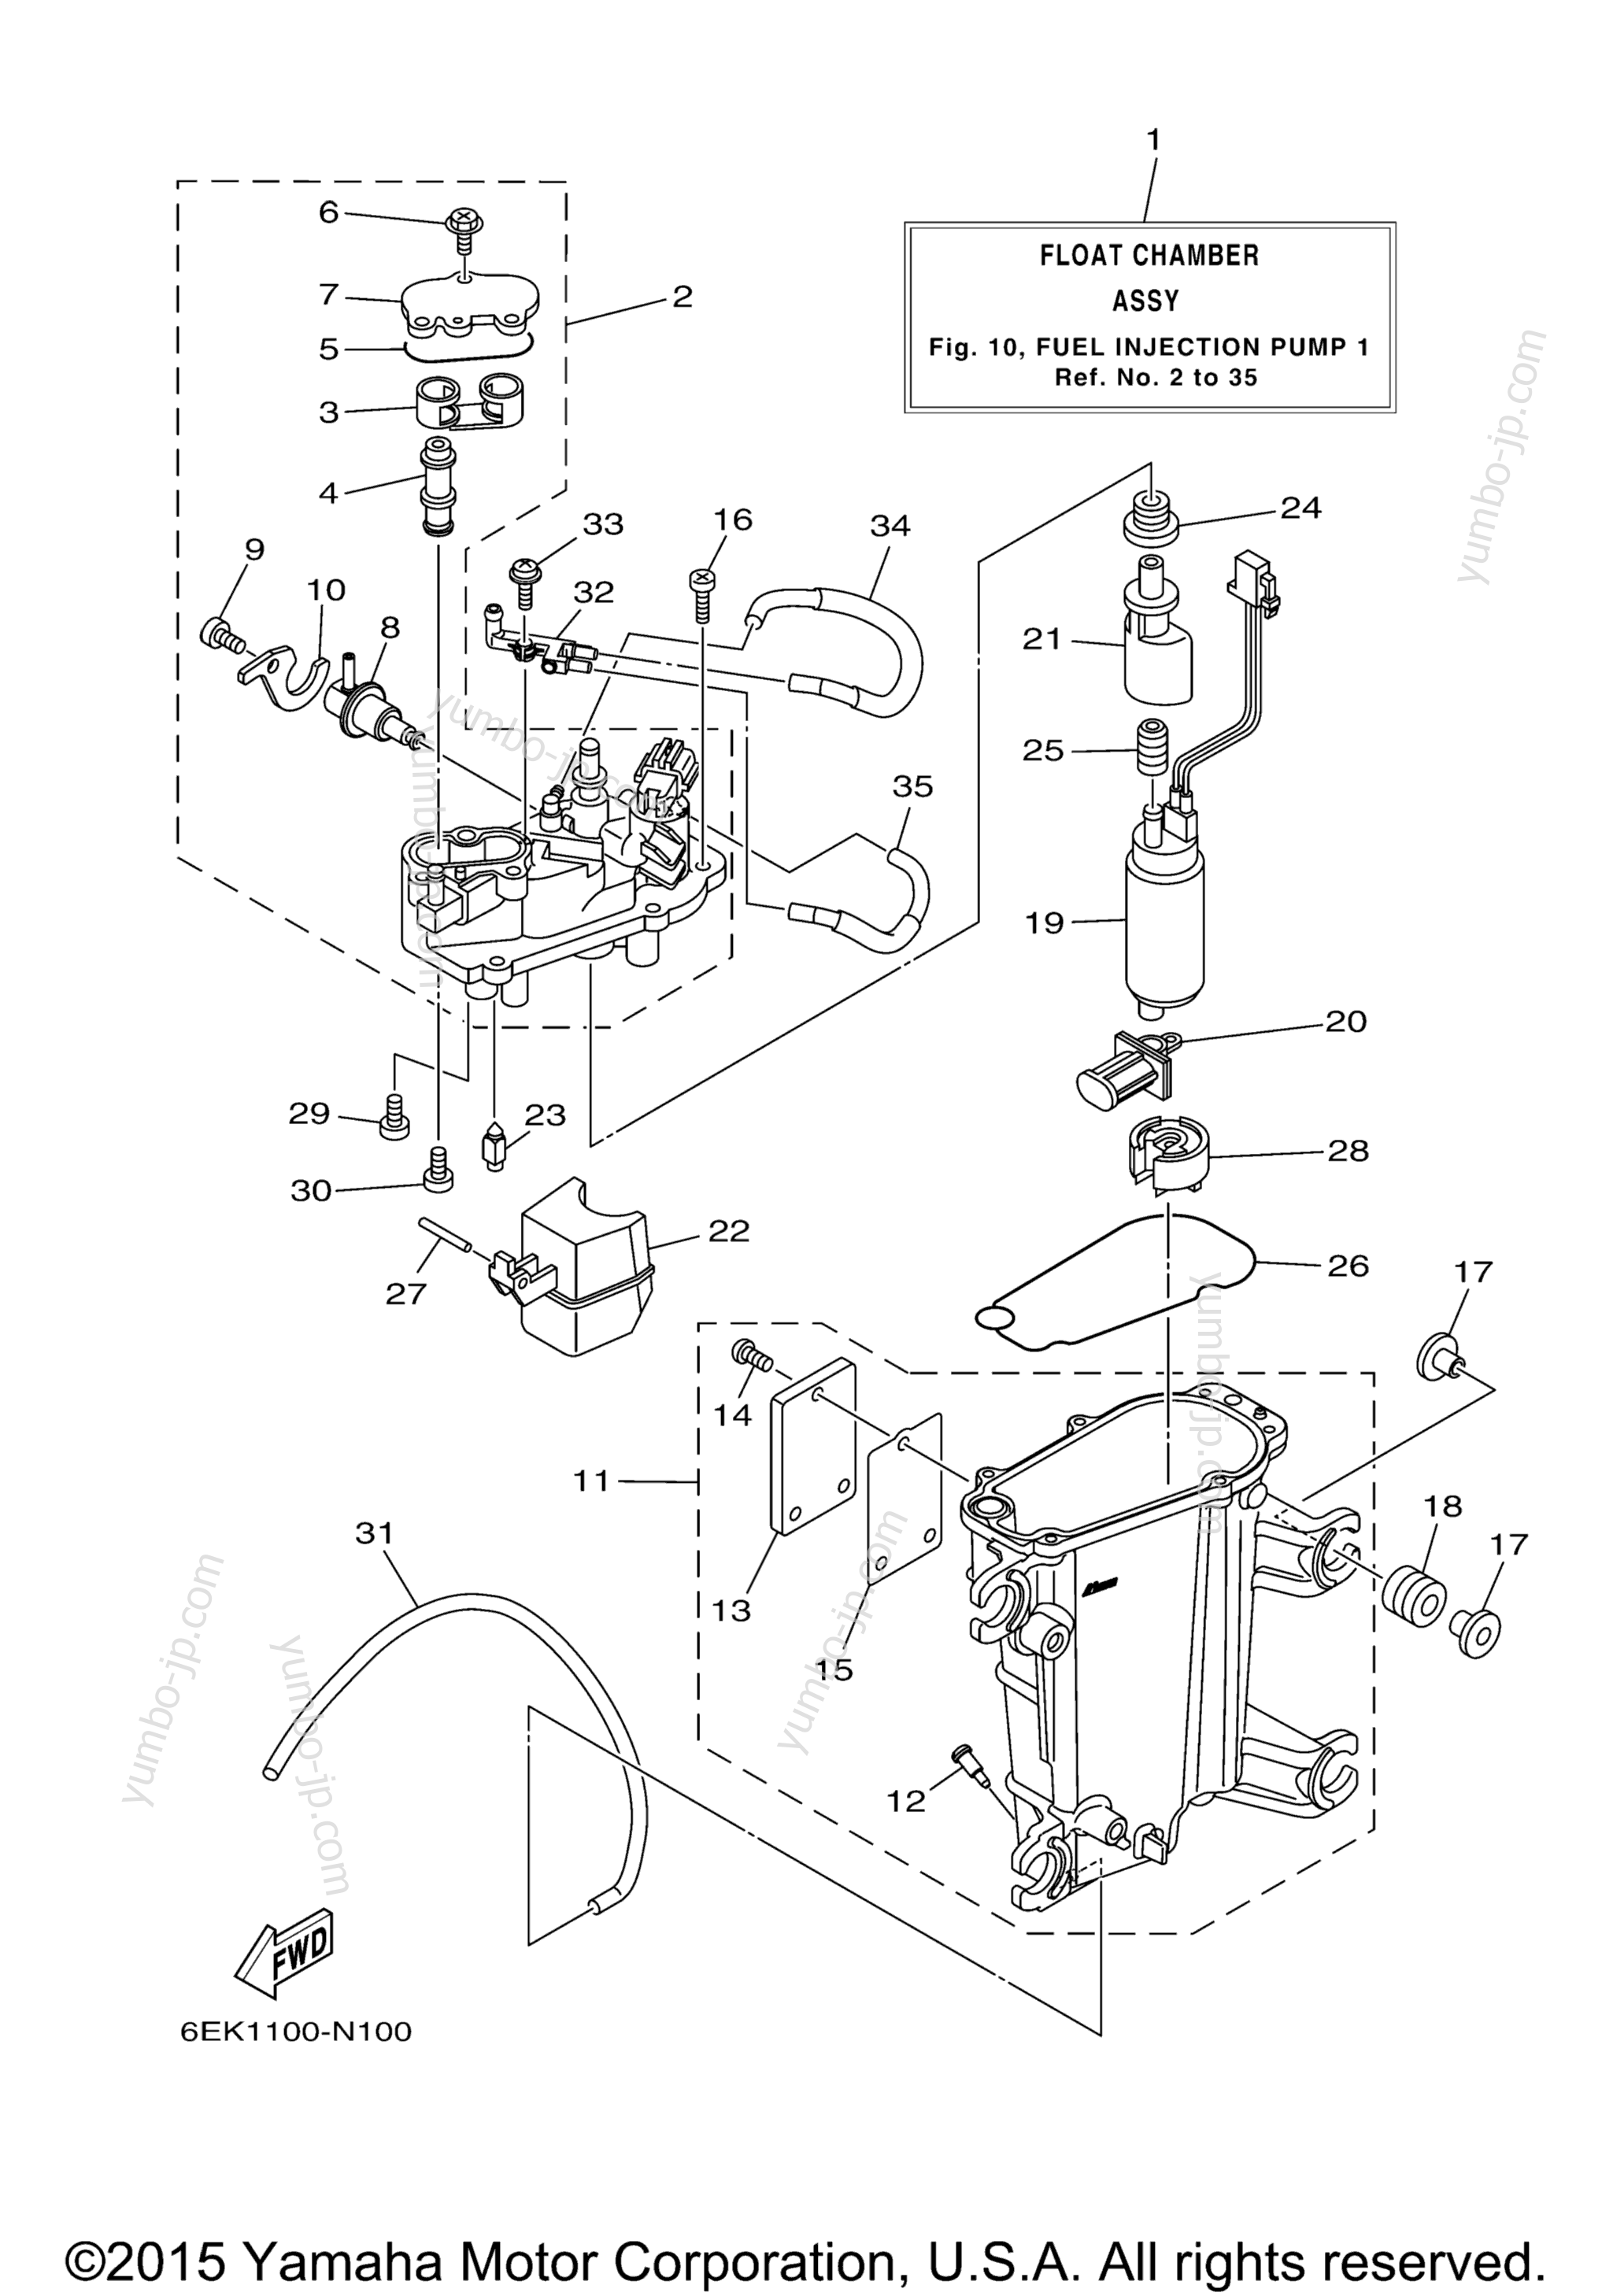 Fuel Injection Pump 1 для лодочных моторов YAMAHA LF115XB (0115) 2006 г.